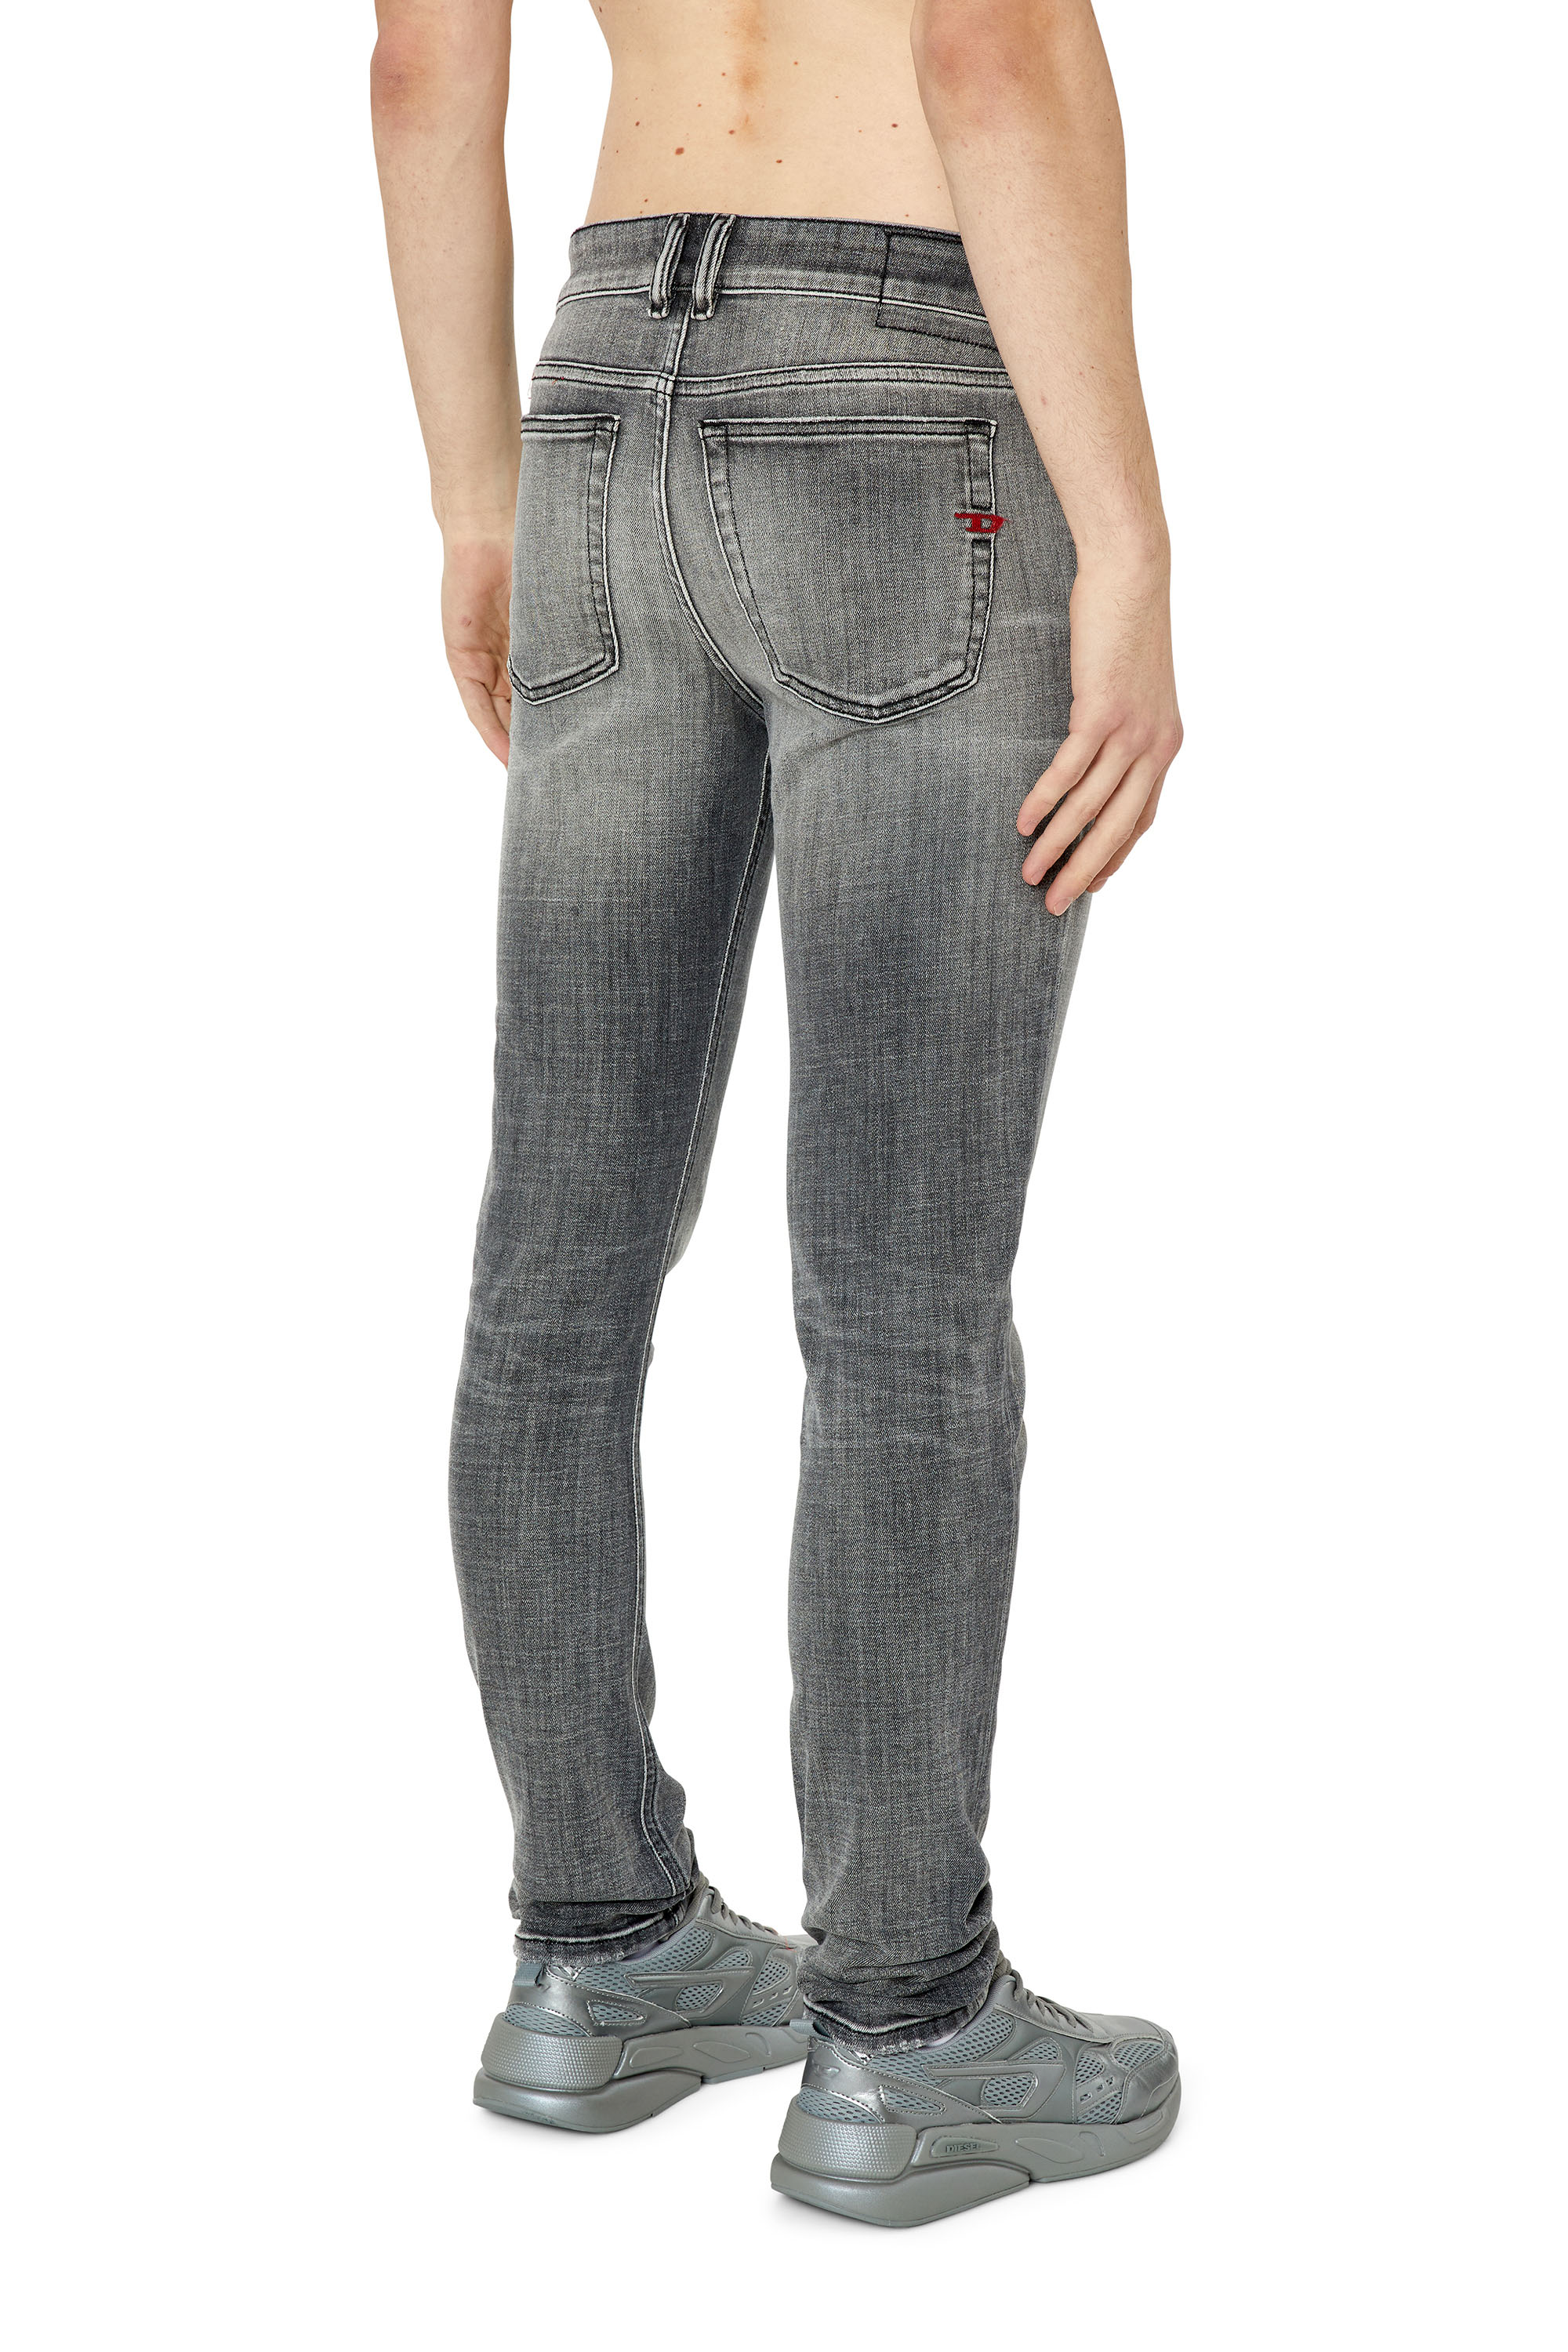 verdacht geeuwen onderschrift Men's Jeans: Skinny, Slim, Bootcut, Tapered, Straight | Diesel®